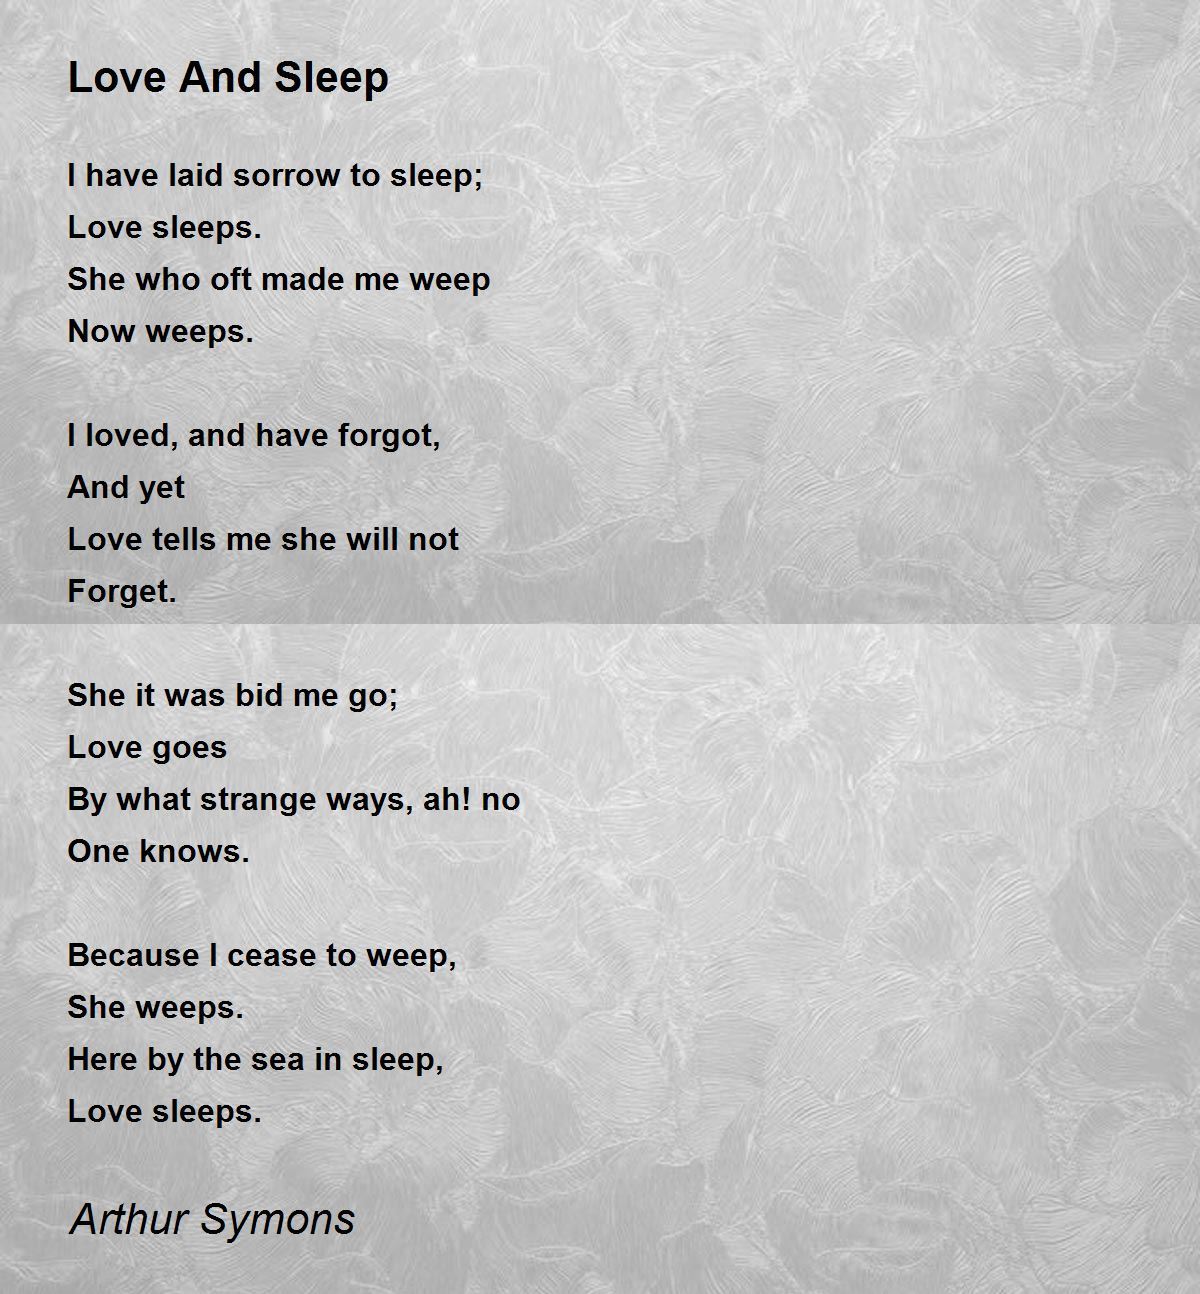 Love And Sleep - Love And Sleep Poem by Arthur Symons